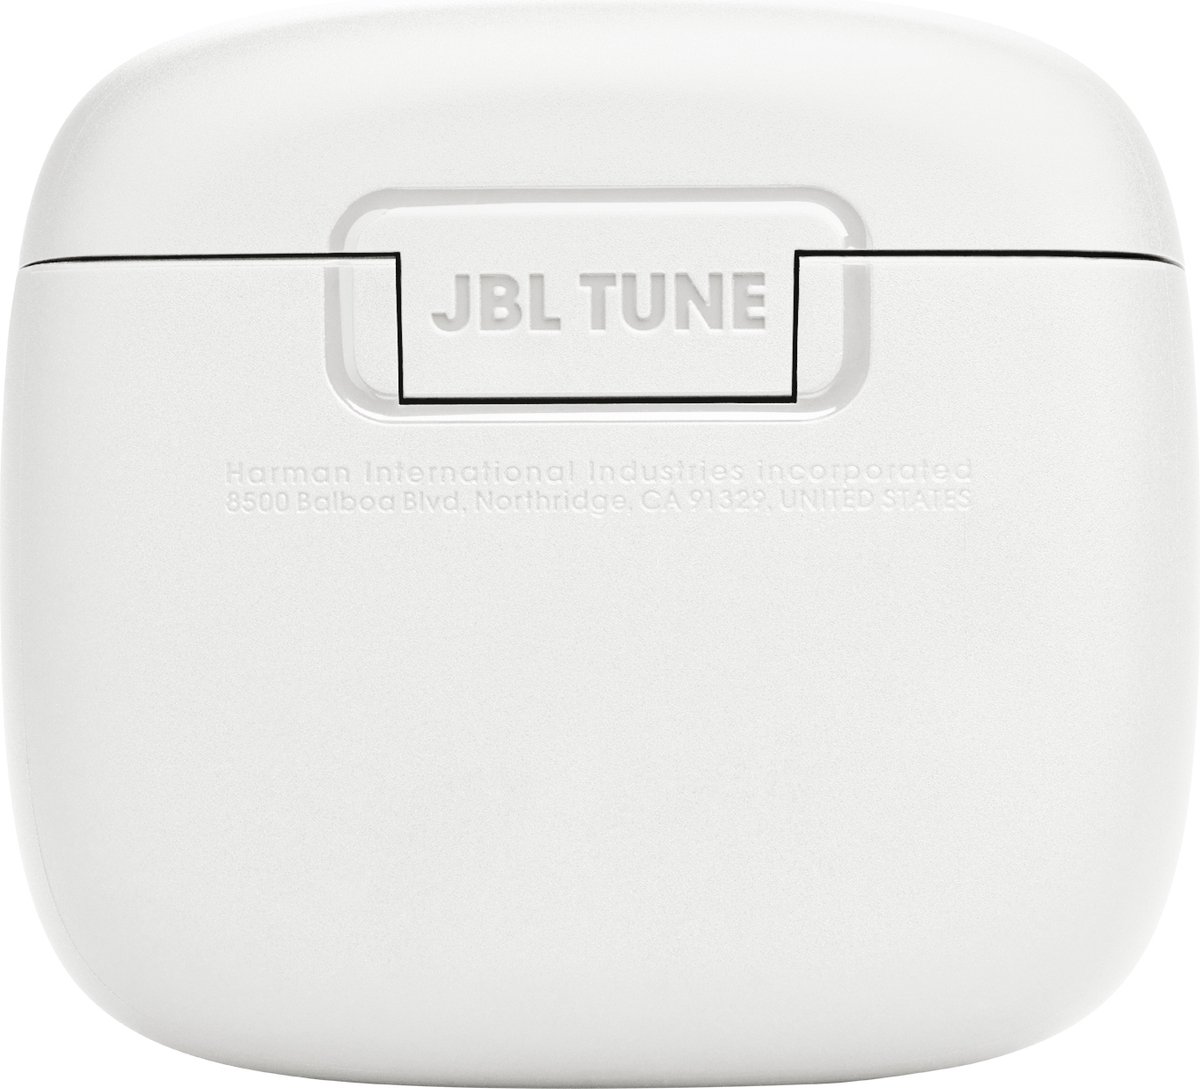 JBL Écouteurs sans aucun fil Tune 225 TWS - Bleu